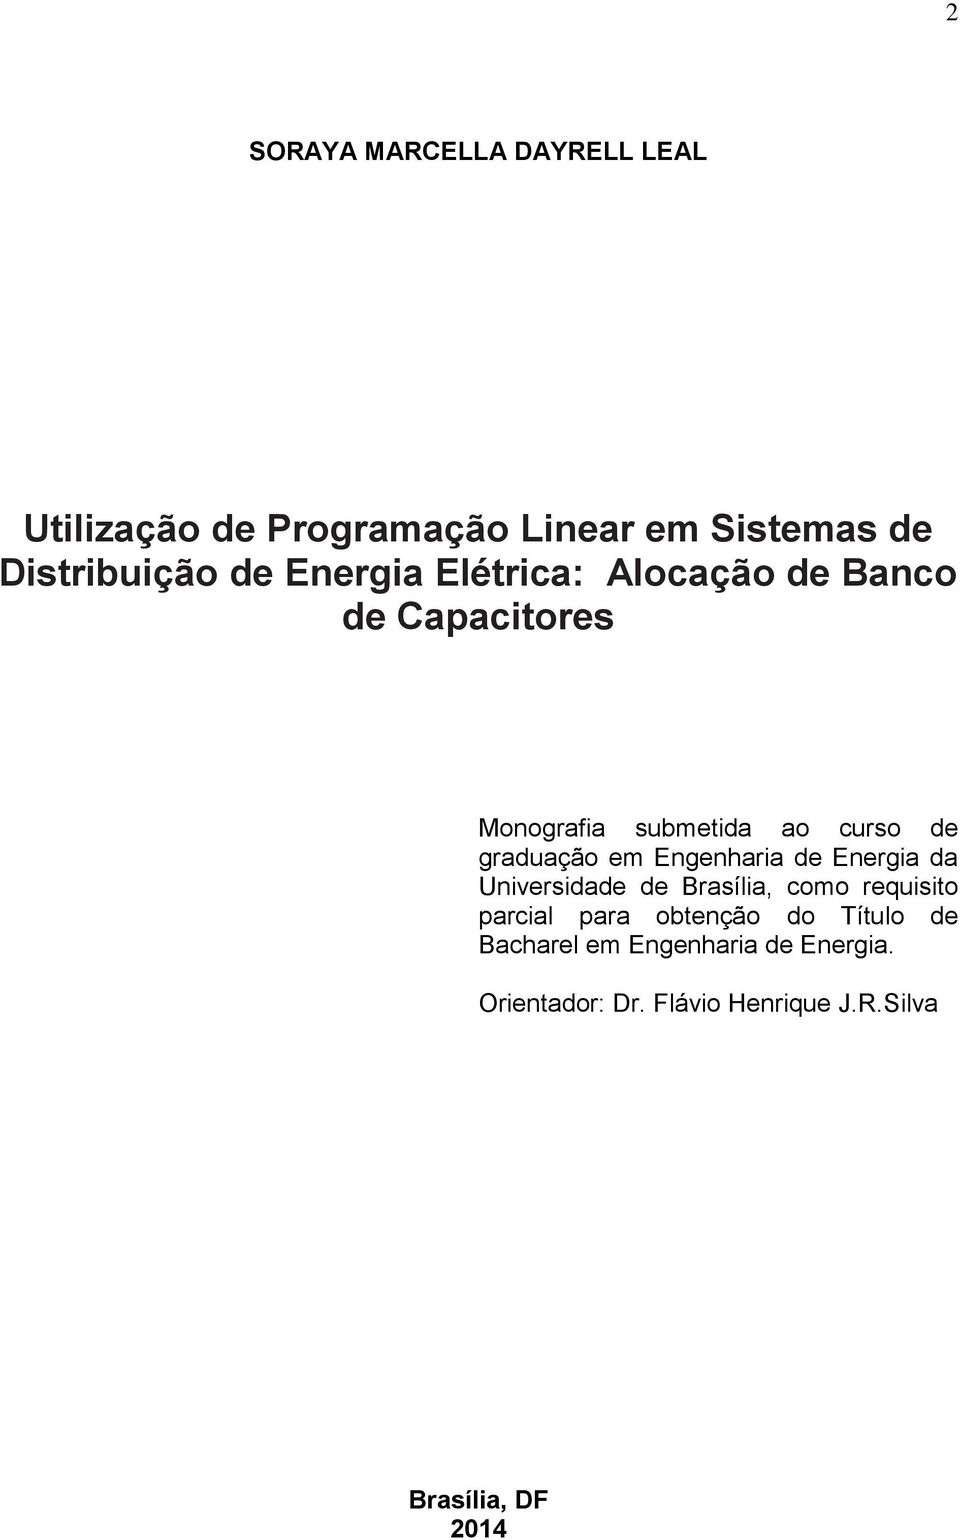 Engenharia de Energia da Universidade de Brasília, como requisito parcial para obtenção do